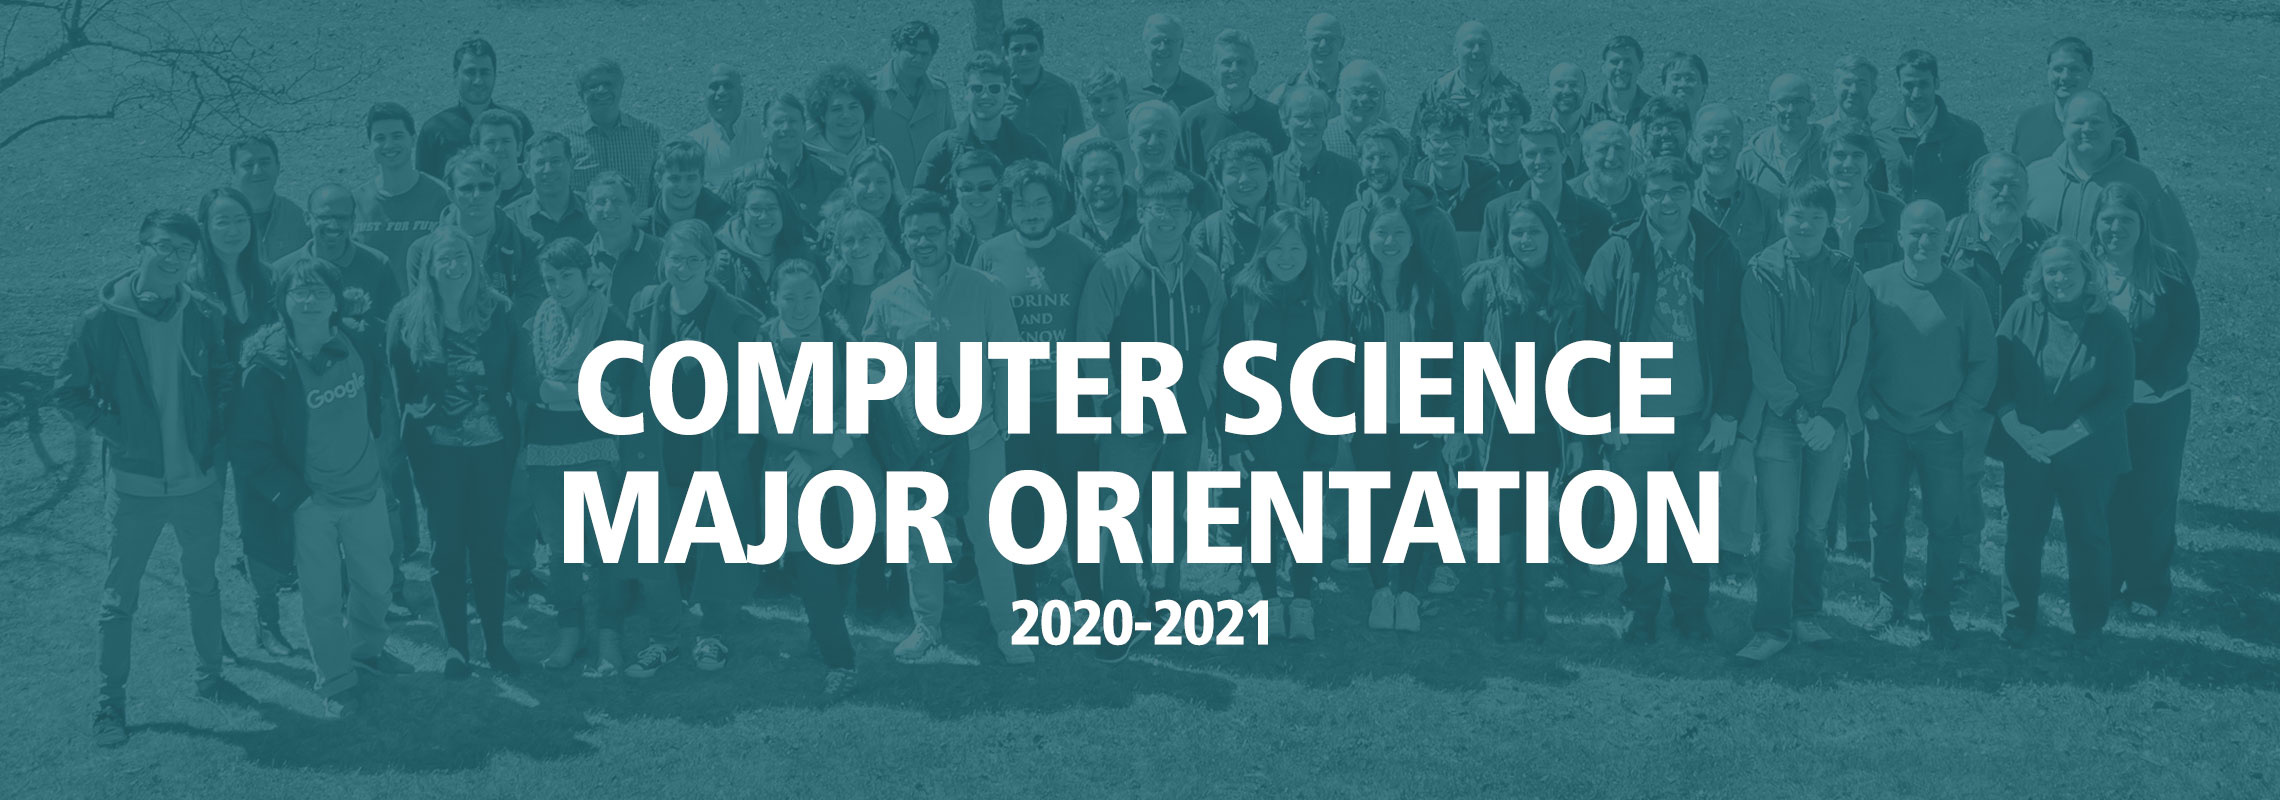 Computer Science Major Orientation 2020-2021